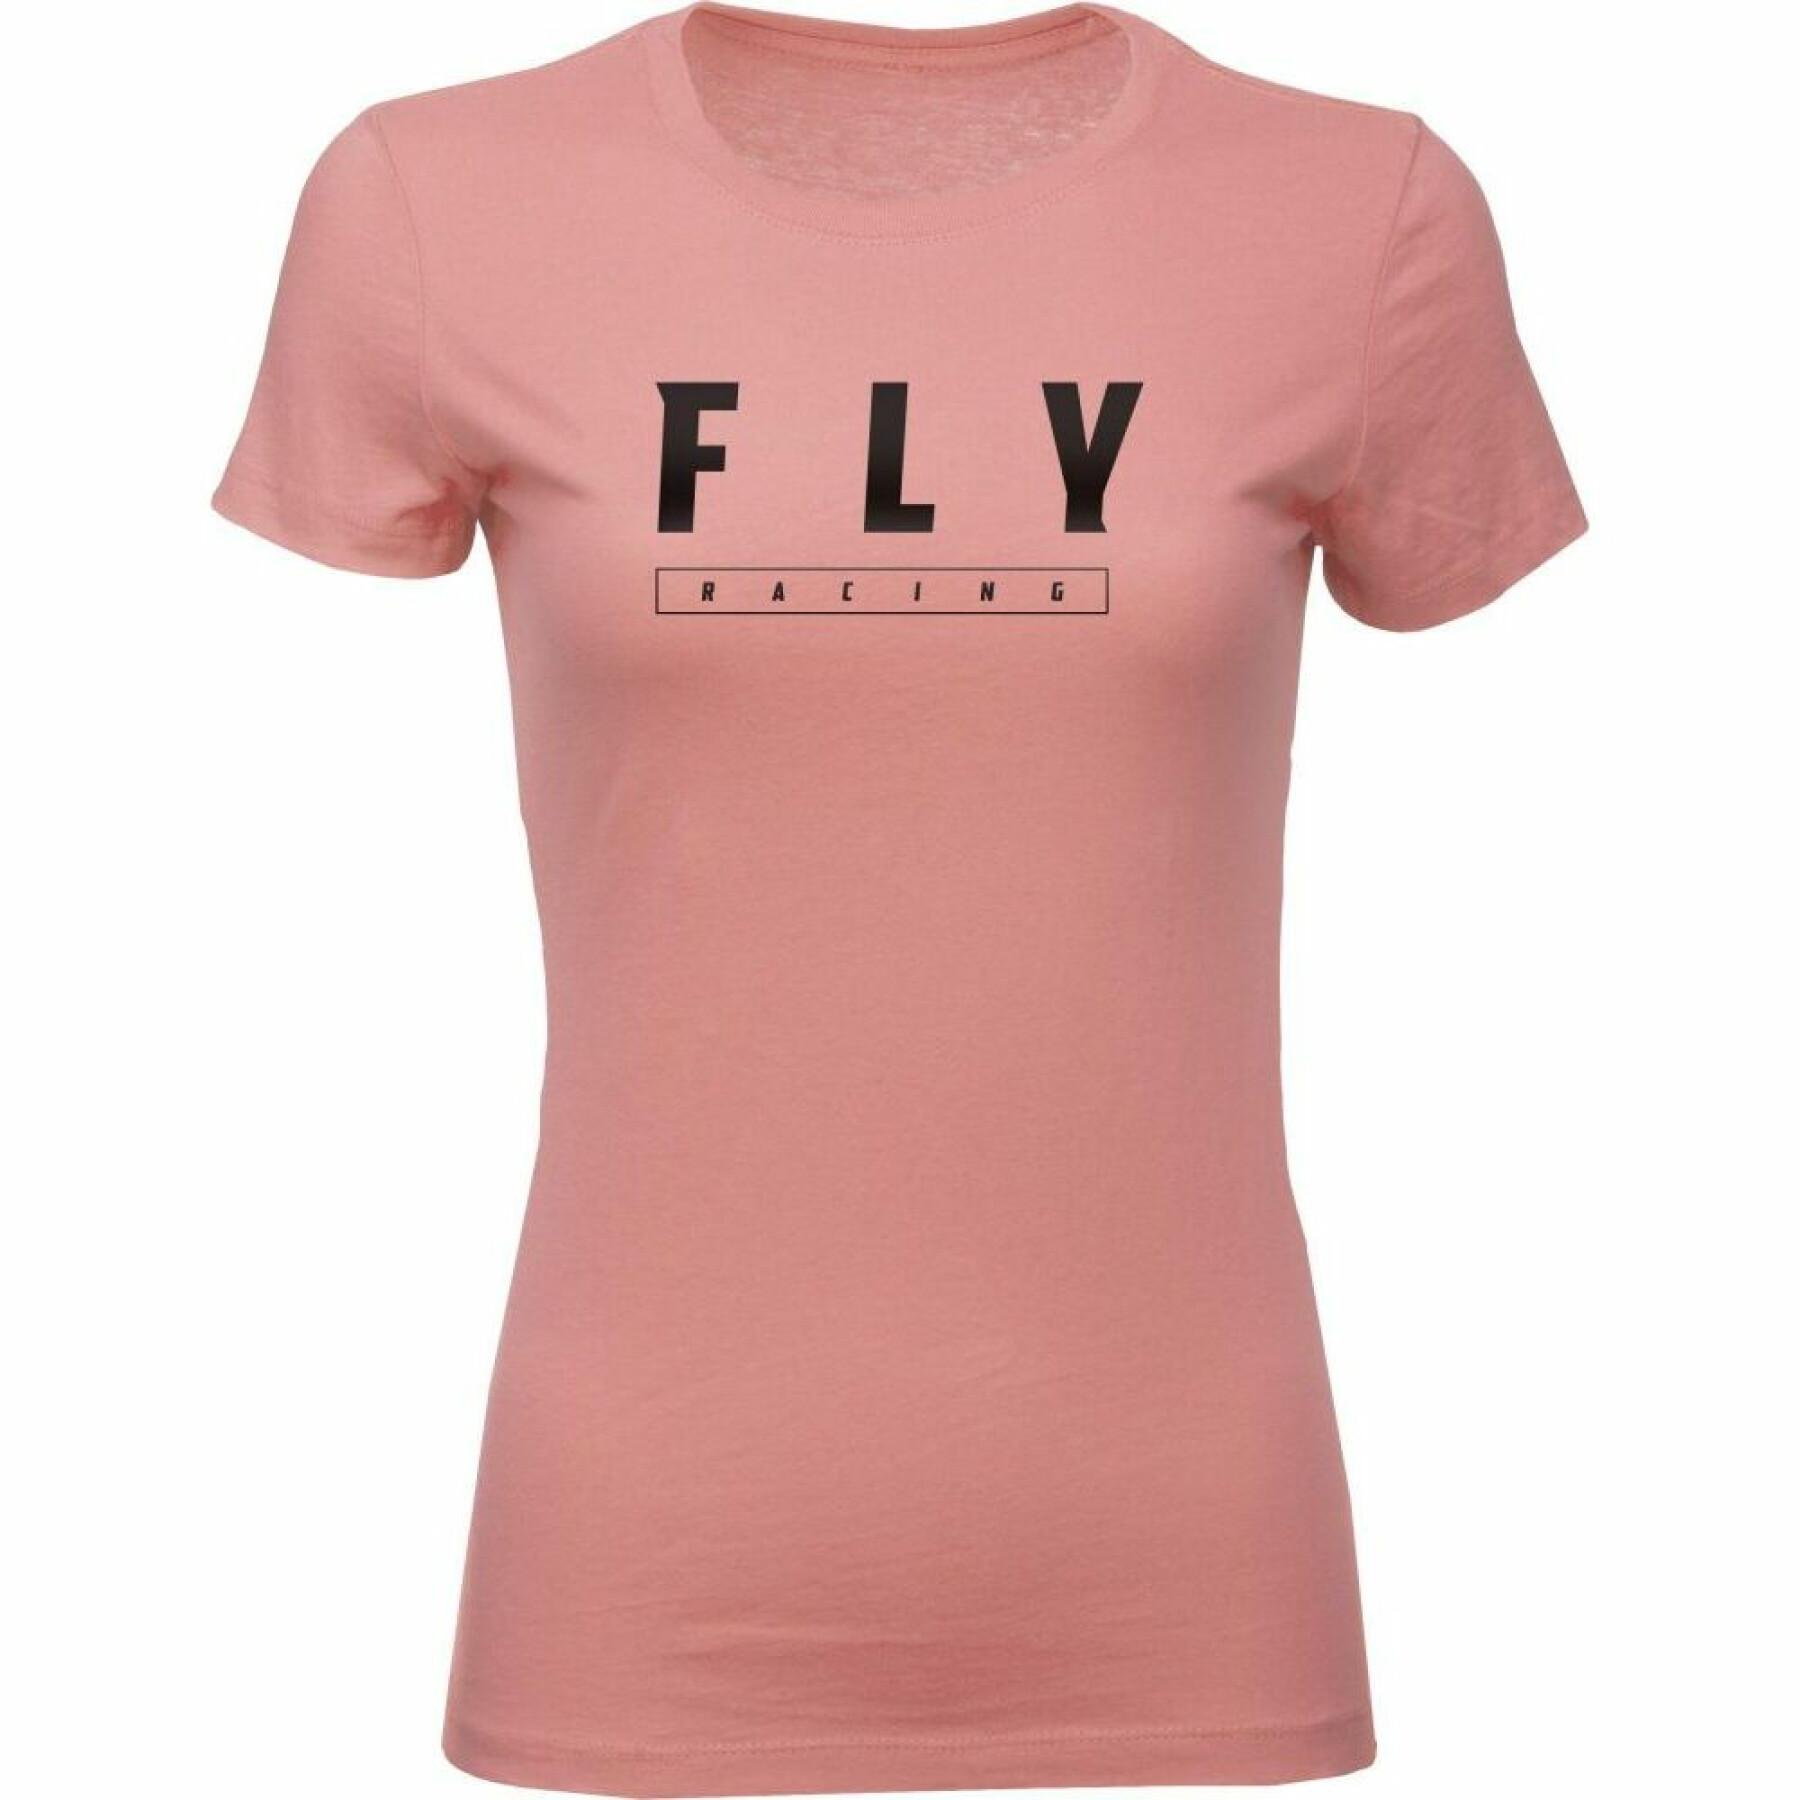 Women's long sleeve T-shirt Fly Racing Logo